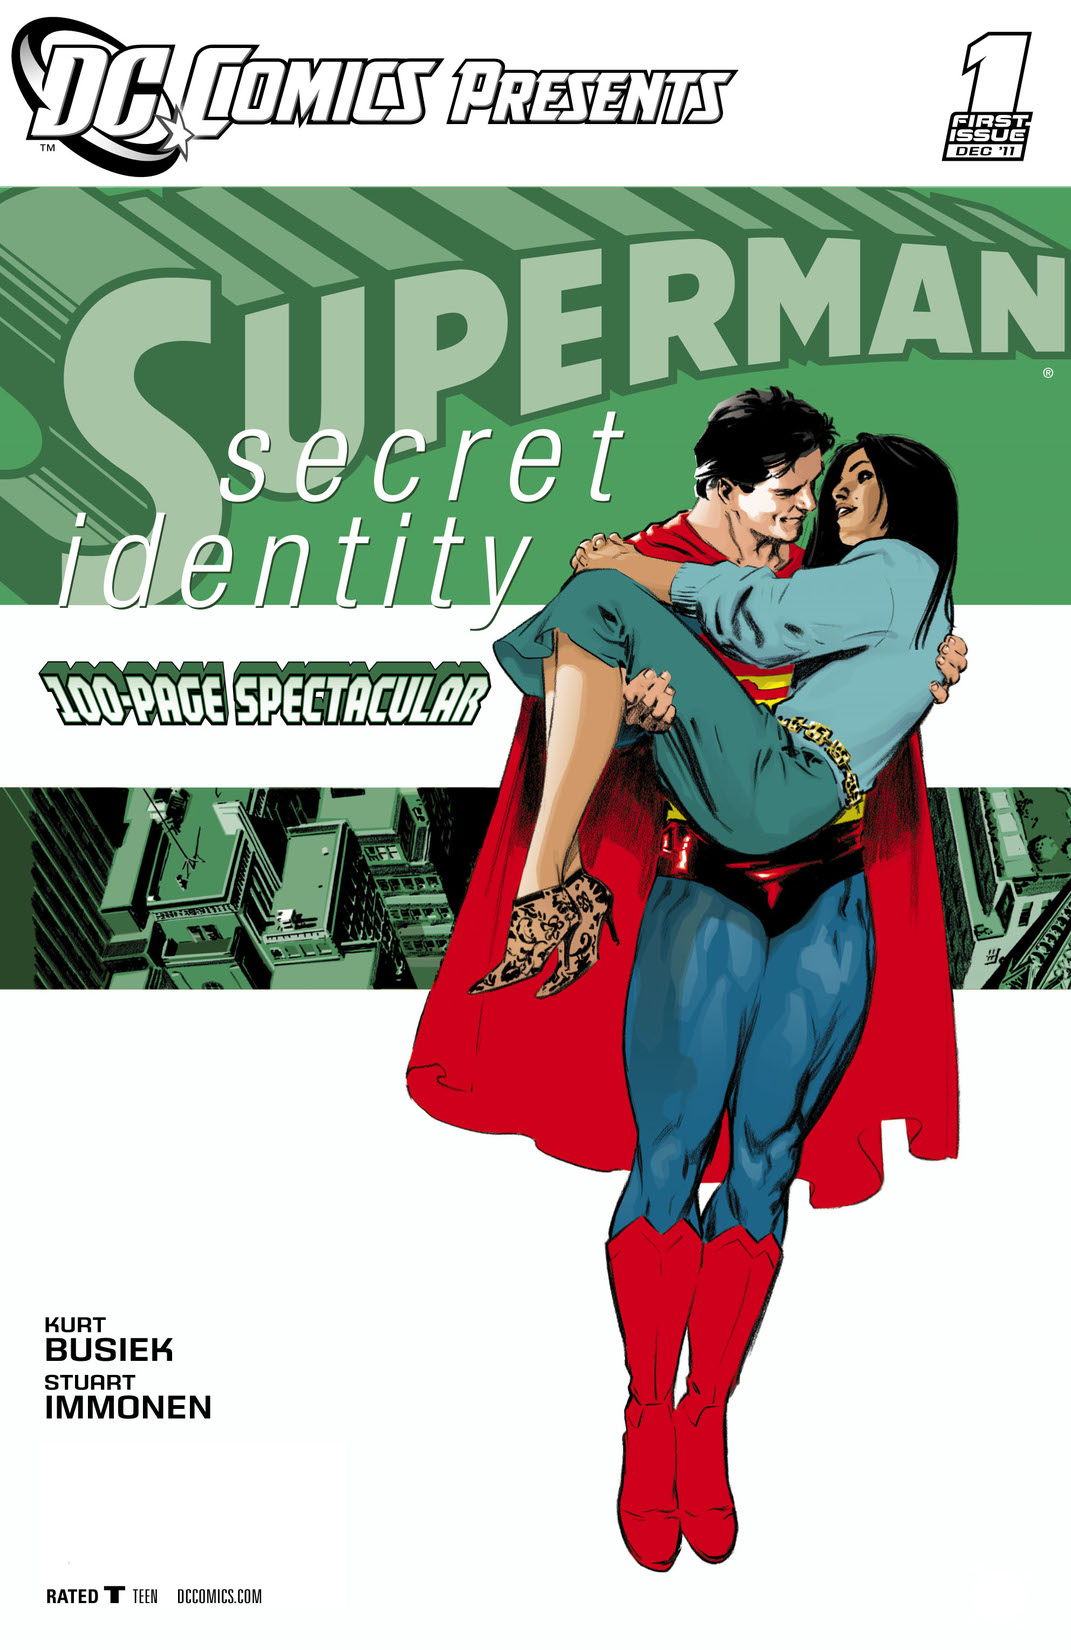 DC Comics Presents: Superman - Secret Identity (2011-) #1 preview images